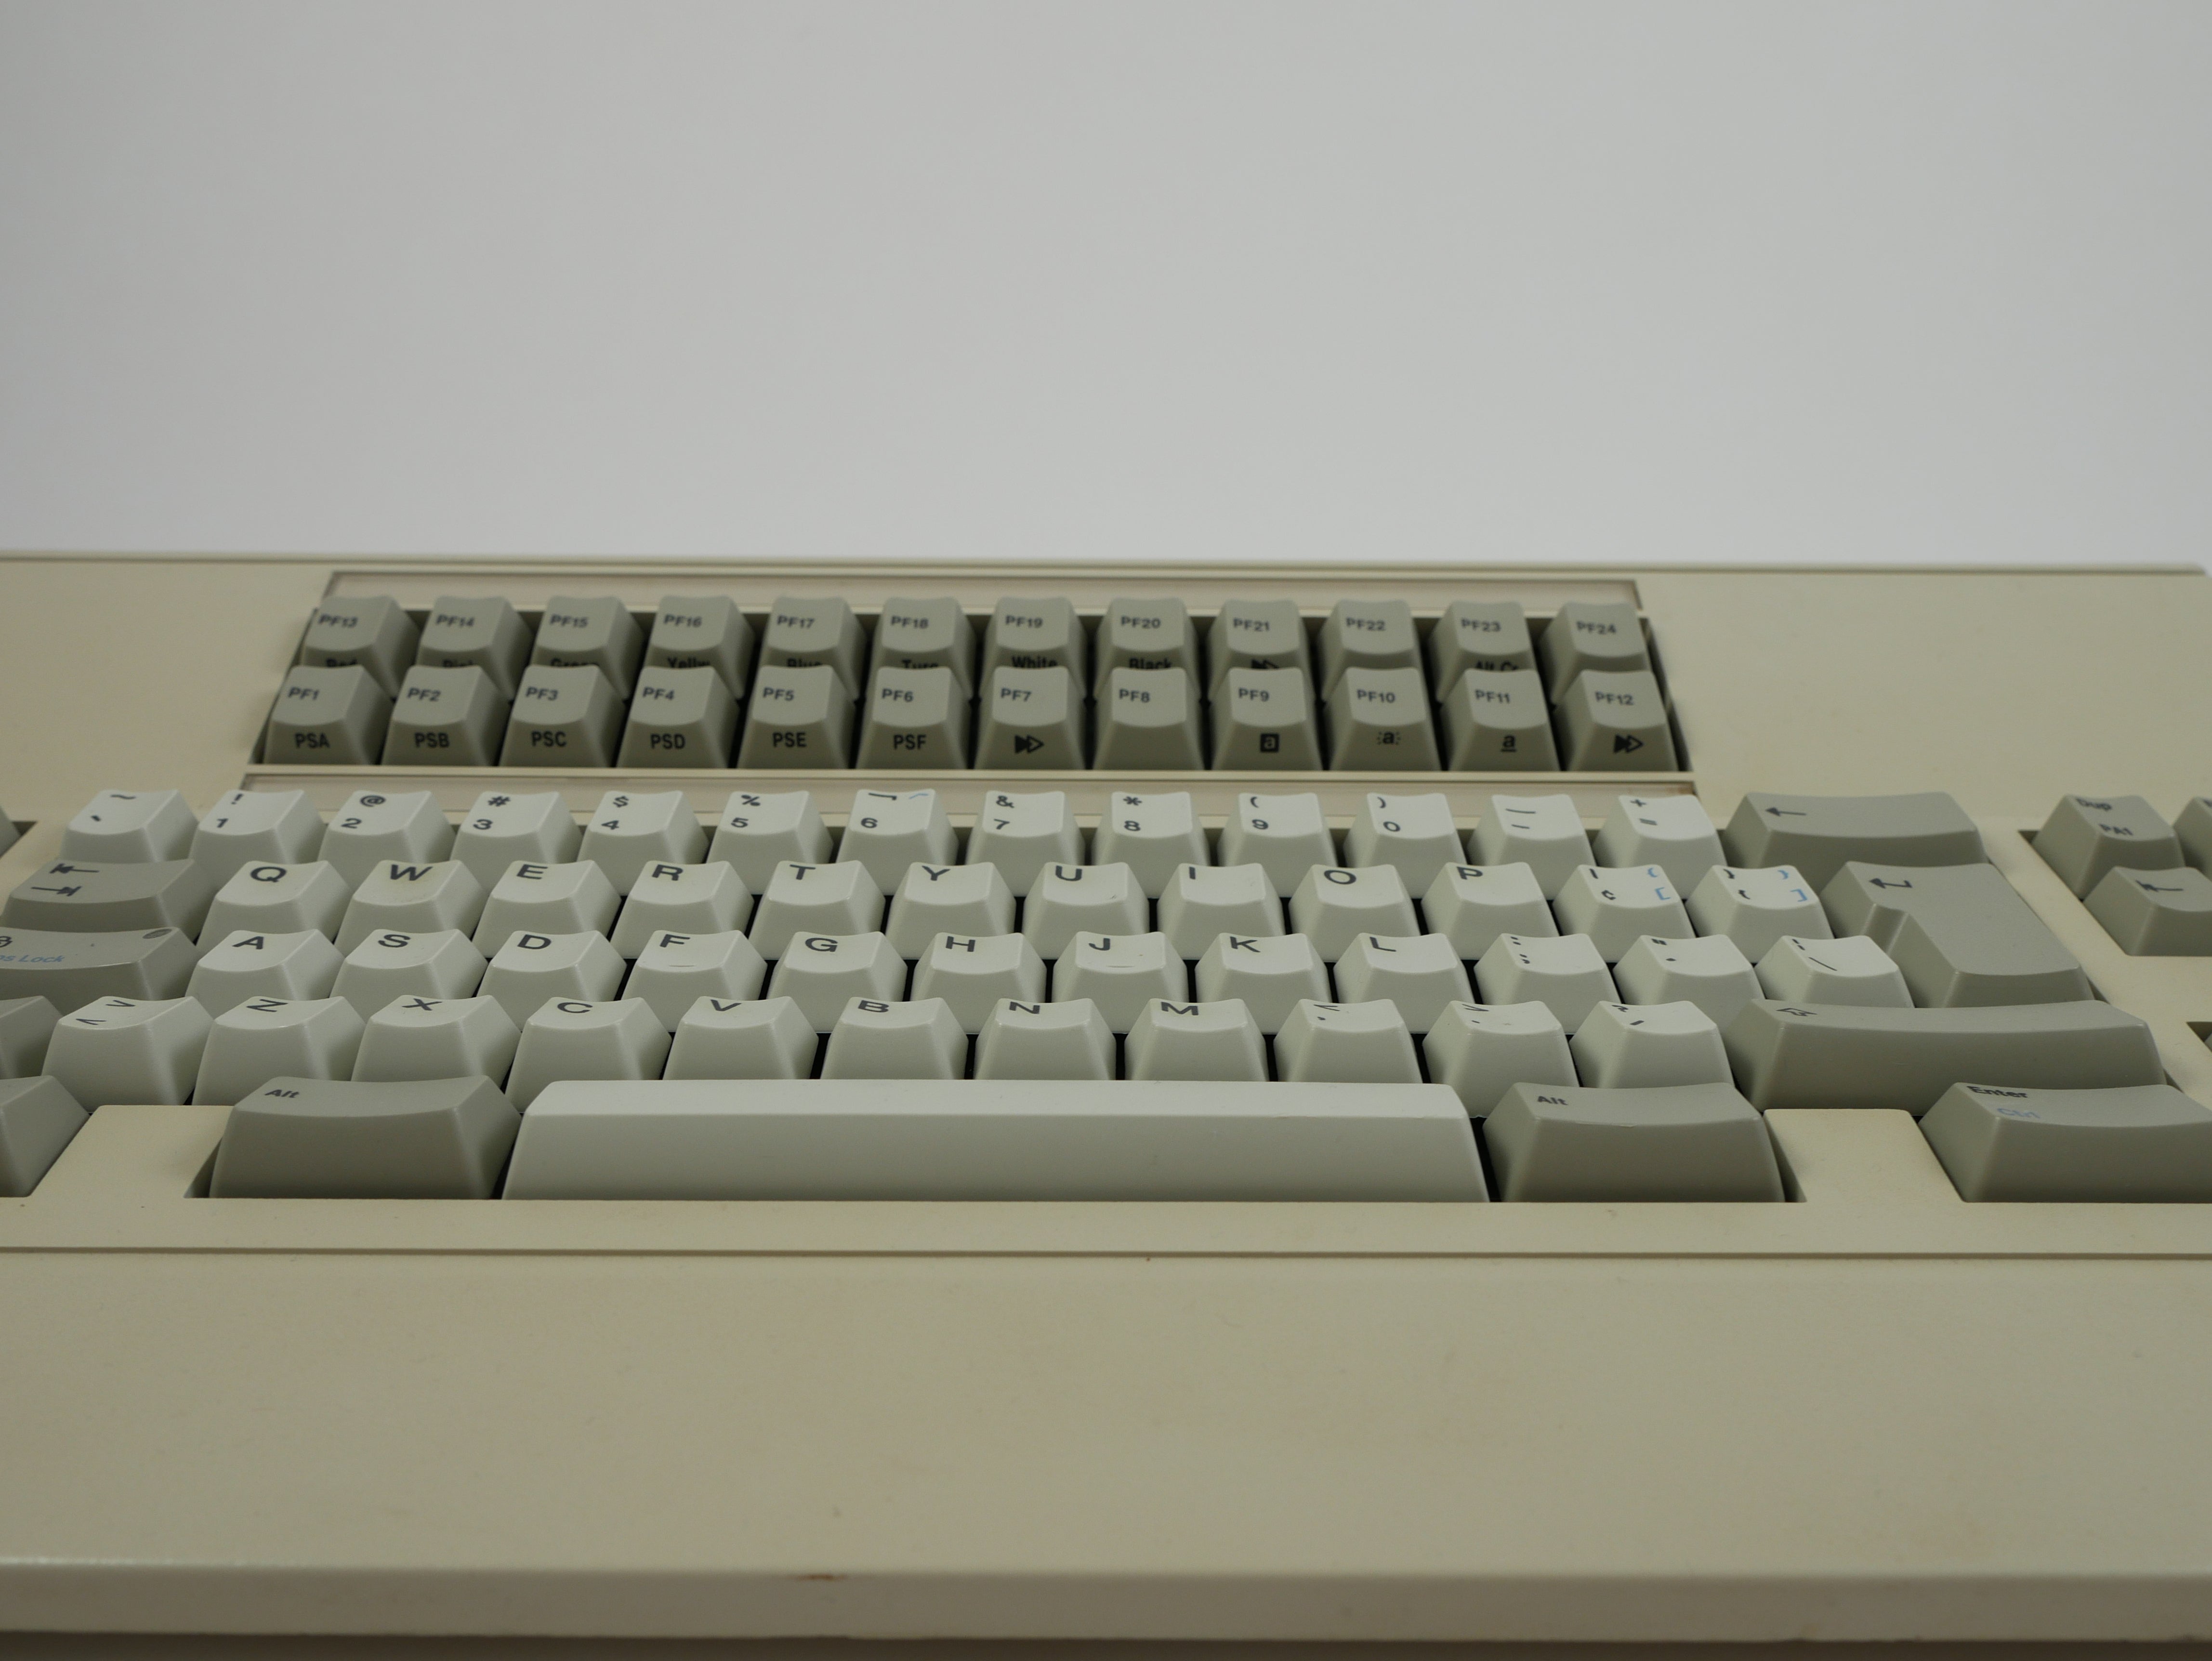 Memorex PC122 Keyboard